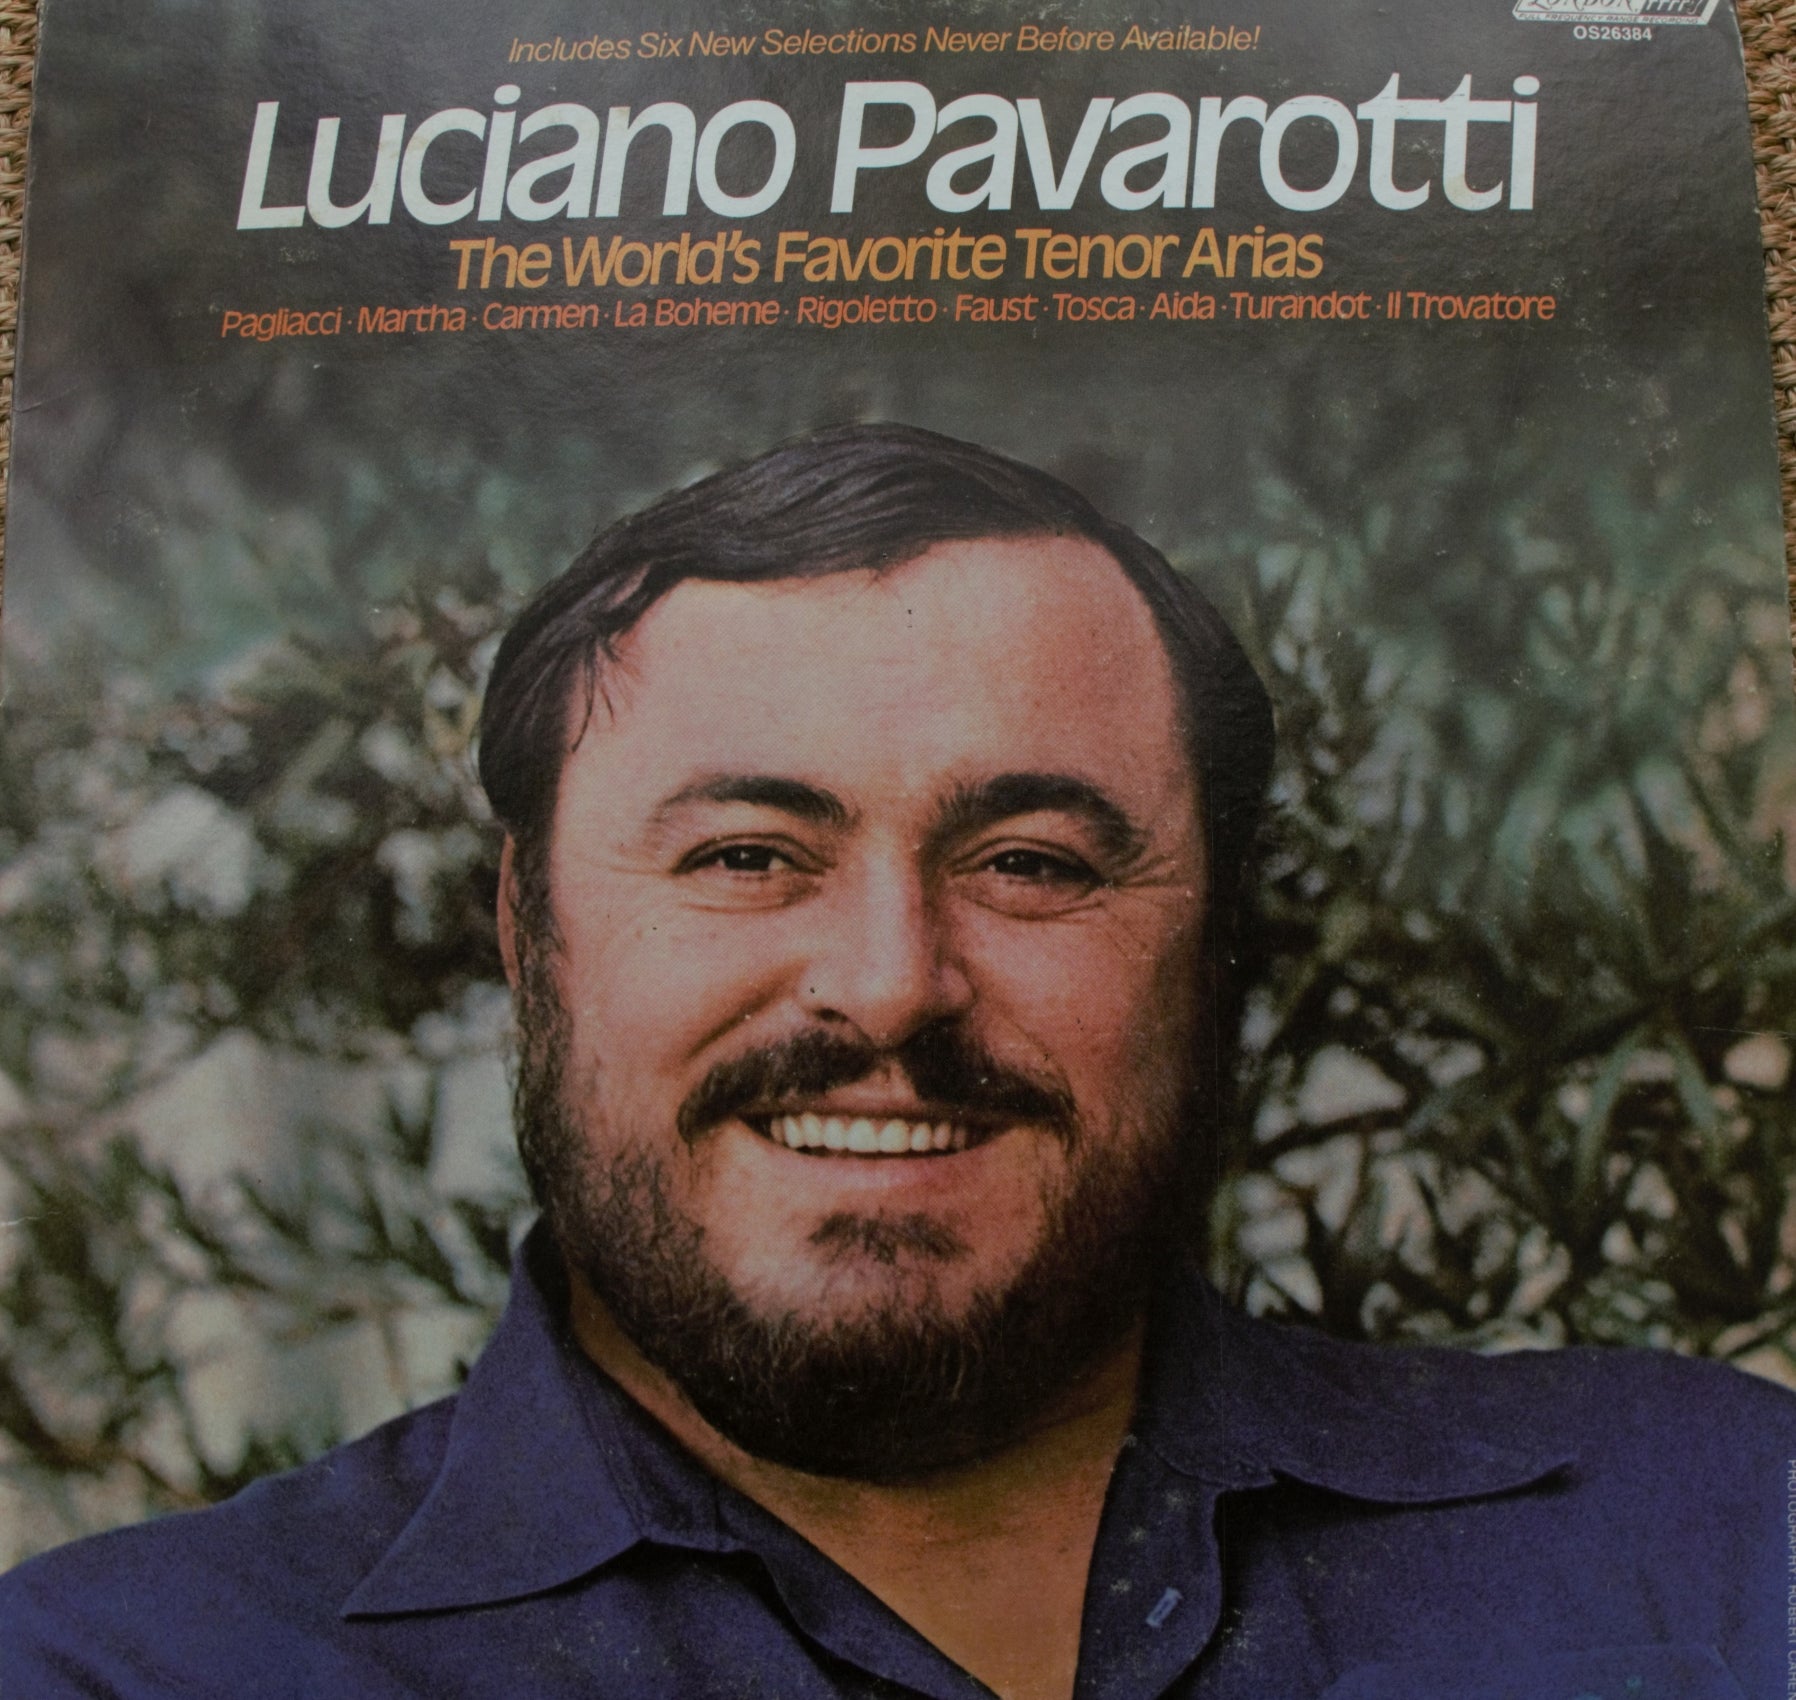 LON007: Luciano Pavarotti - The World's Favorite Tenor Arias